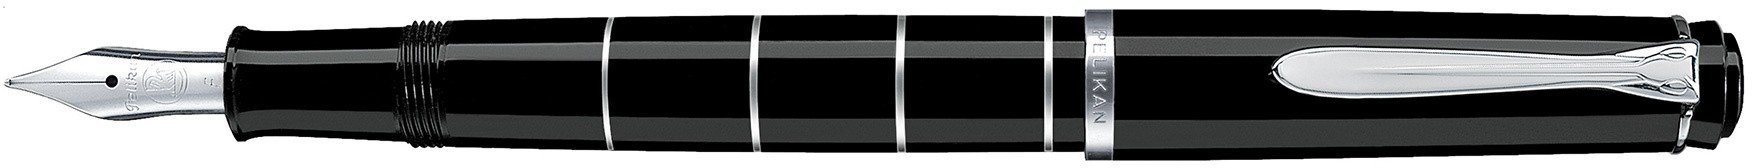 Перьевая ручка Pelikan Elegance Classic Rings M215, черный/серебристый, подарочная коробка